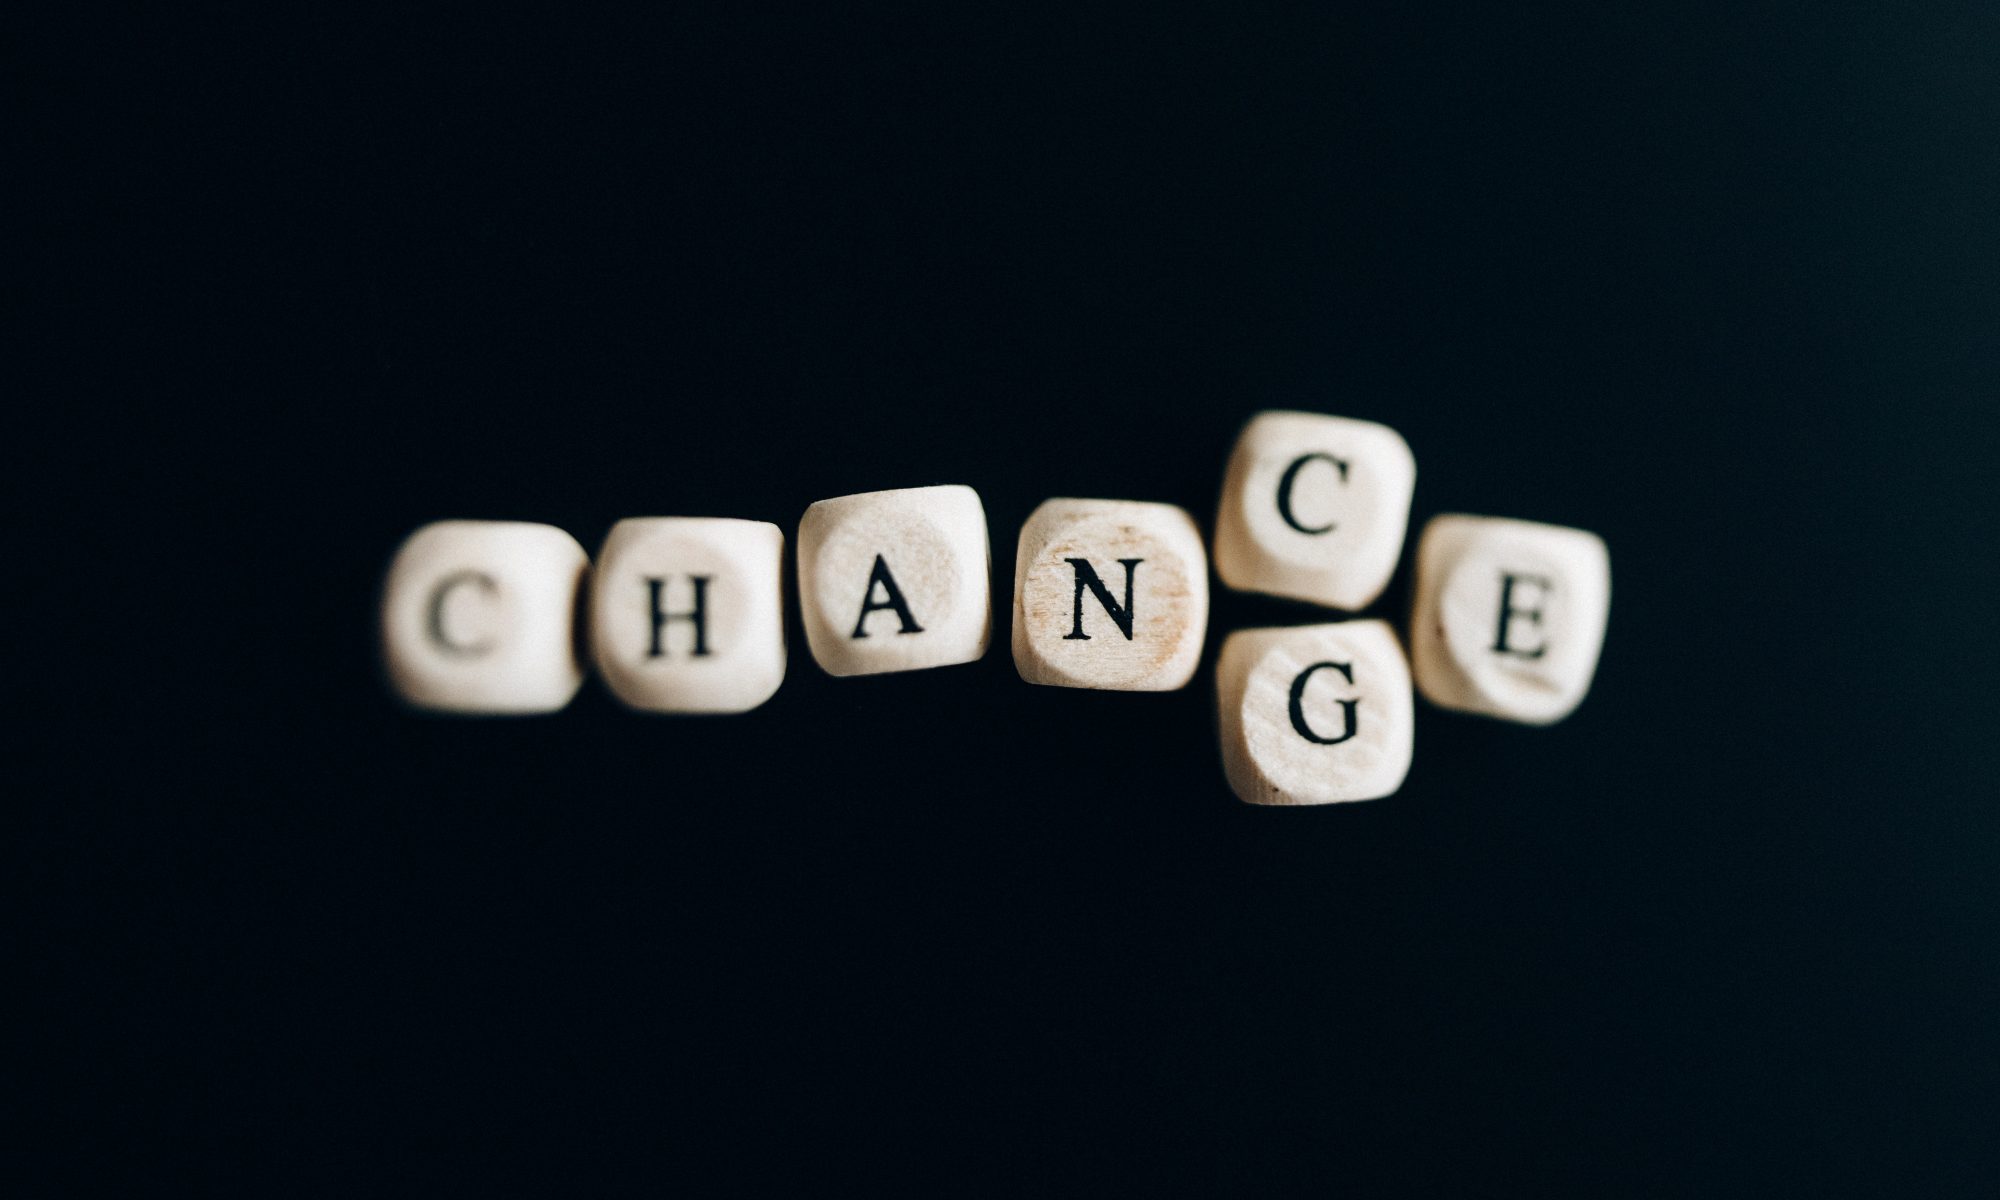 "change" / "chance" "Veränderung" / "Chance"